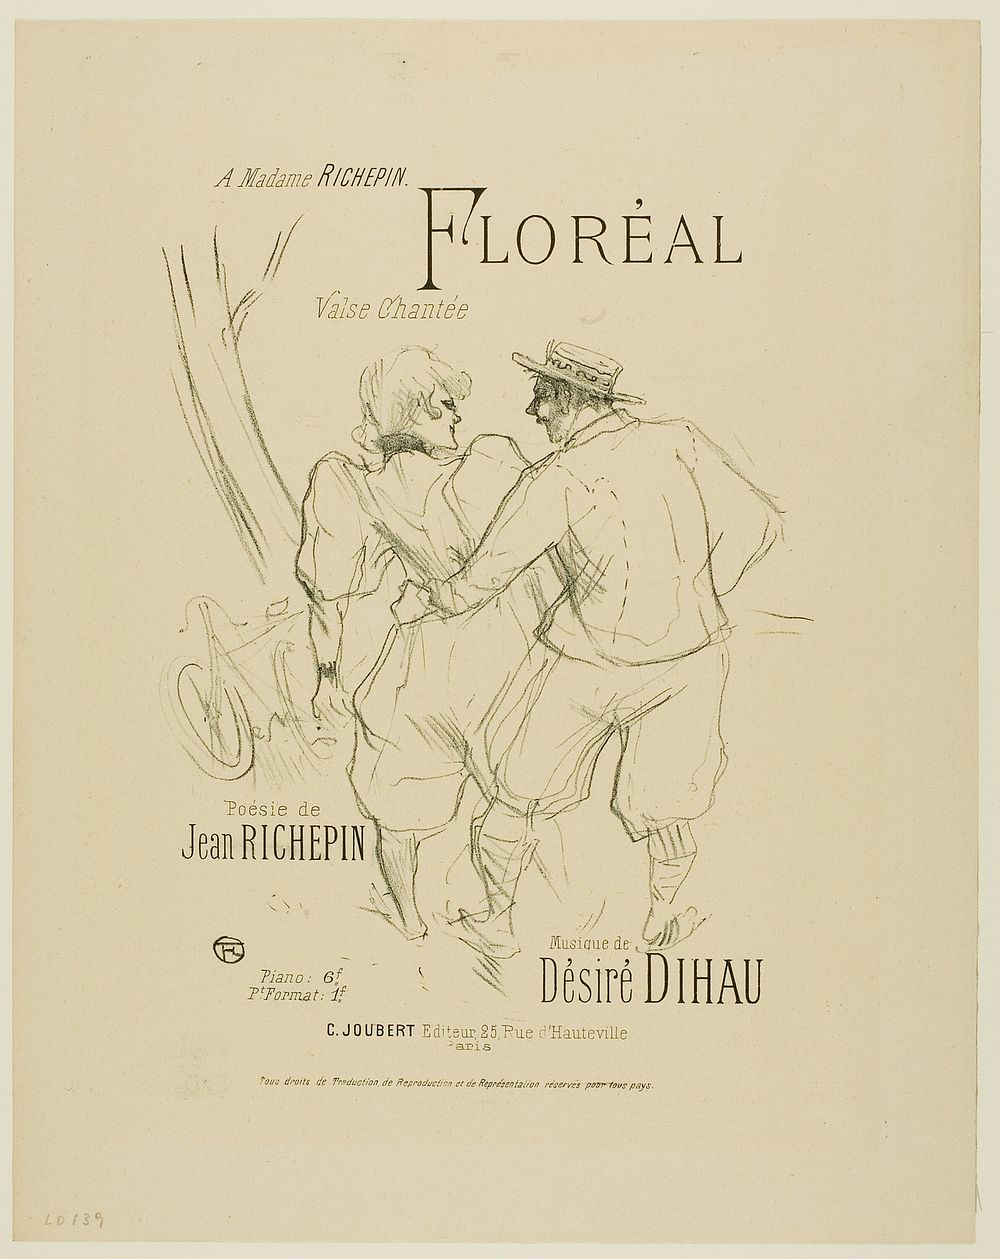 Floréal, from Mélodies de Désiré Dihau by Henri de Toulouse-Lautrec